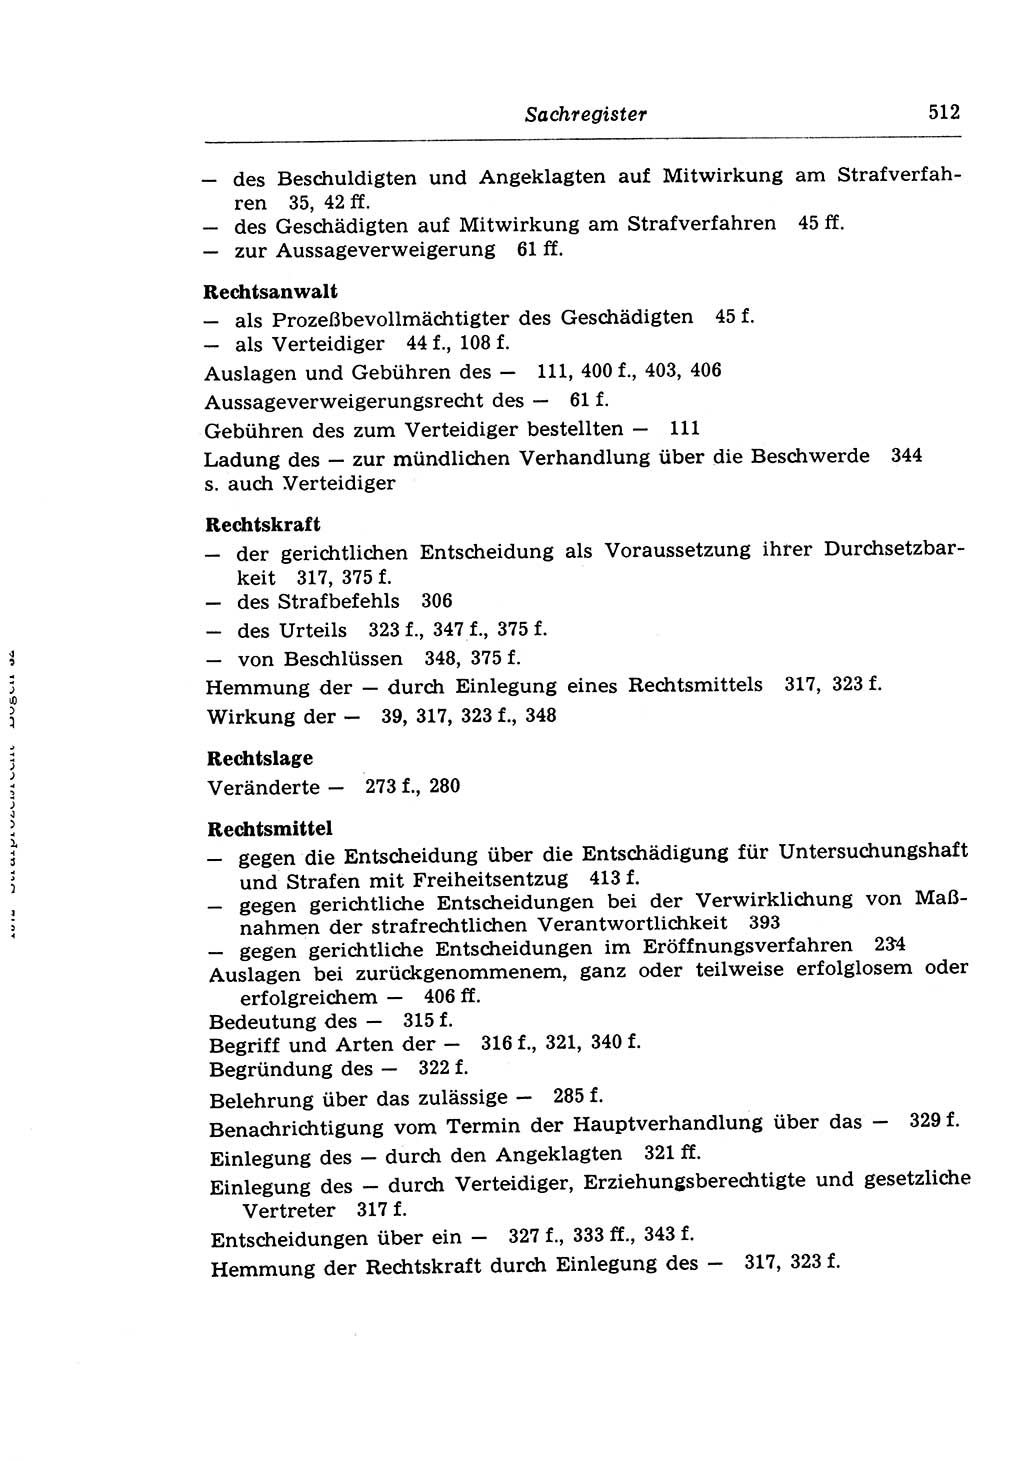 Strafprozeßrecht der DDR (Deutsche Demokratische Republik), Lehrkommentar zur Strafprozeßordnung (StPO) 1968, Seite 512 (Strafprozeßr. DDR Lehrkomm. StPO 19688, S. 512)